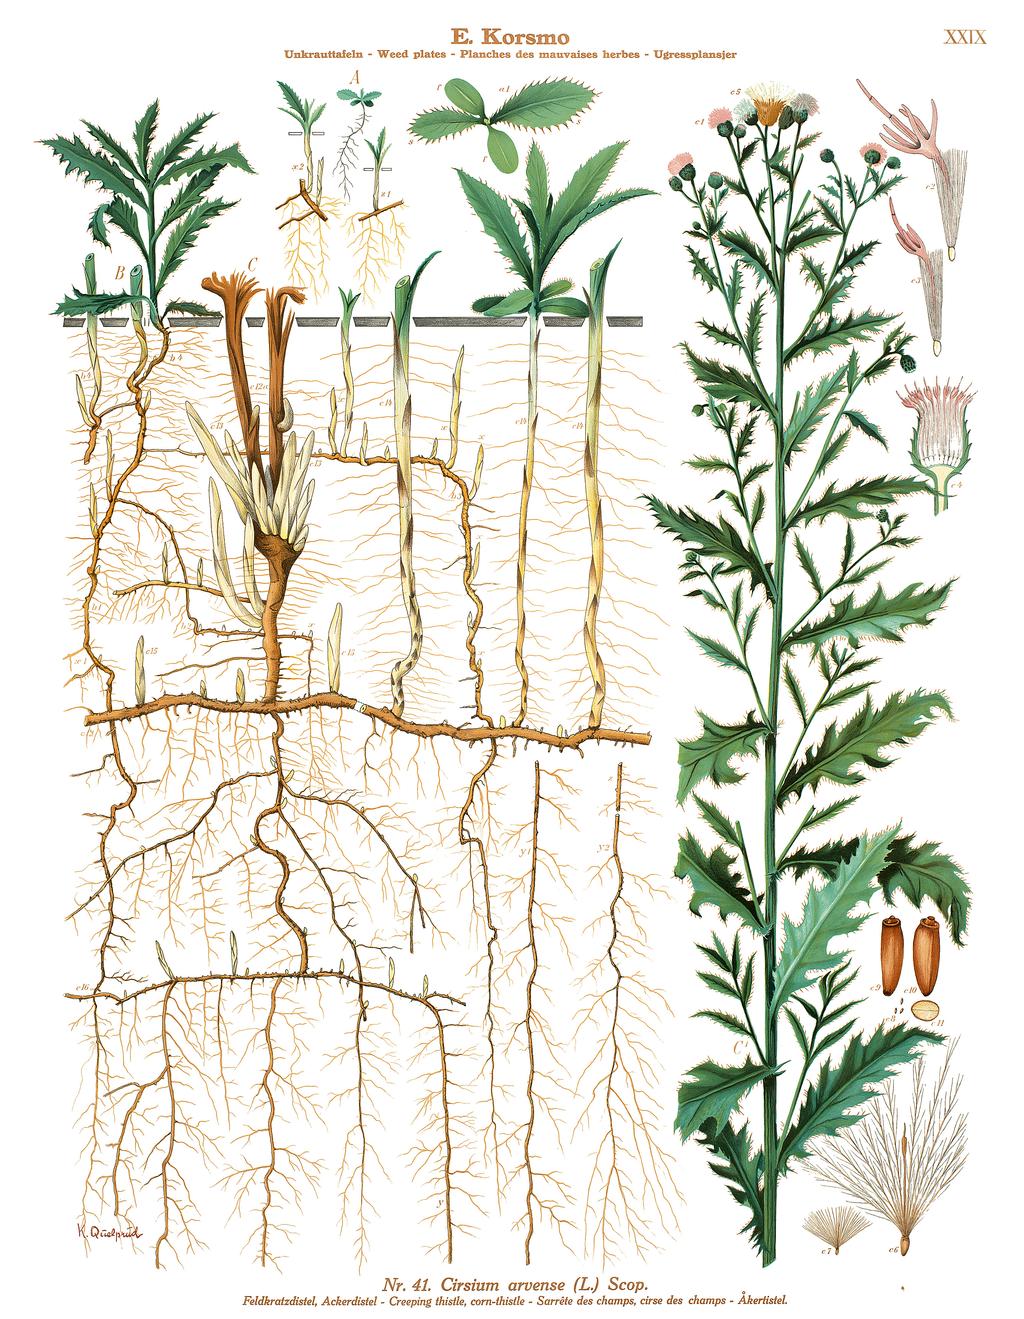 Bild 1. Åkertistel (Cirsium arvense (L.) Scop.